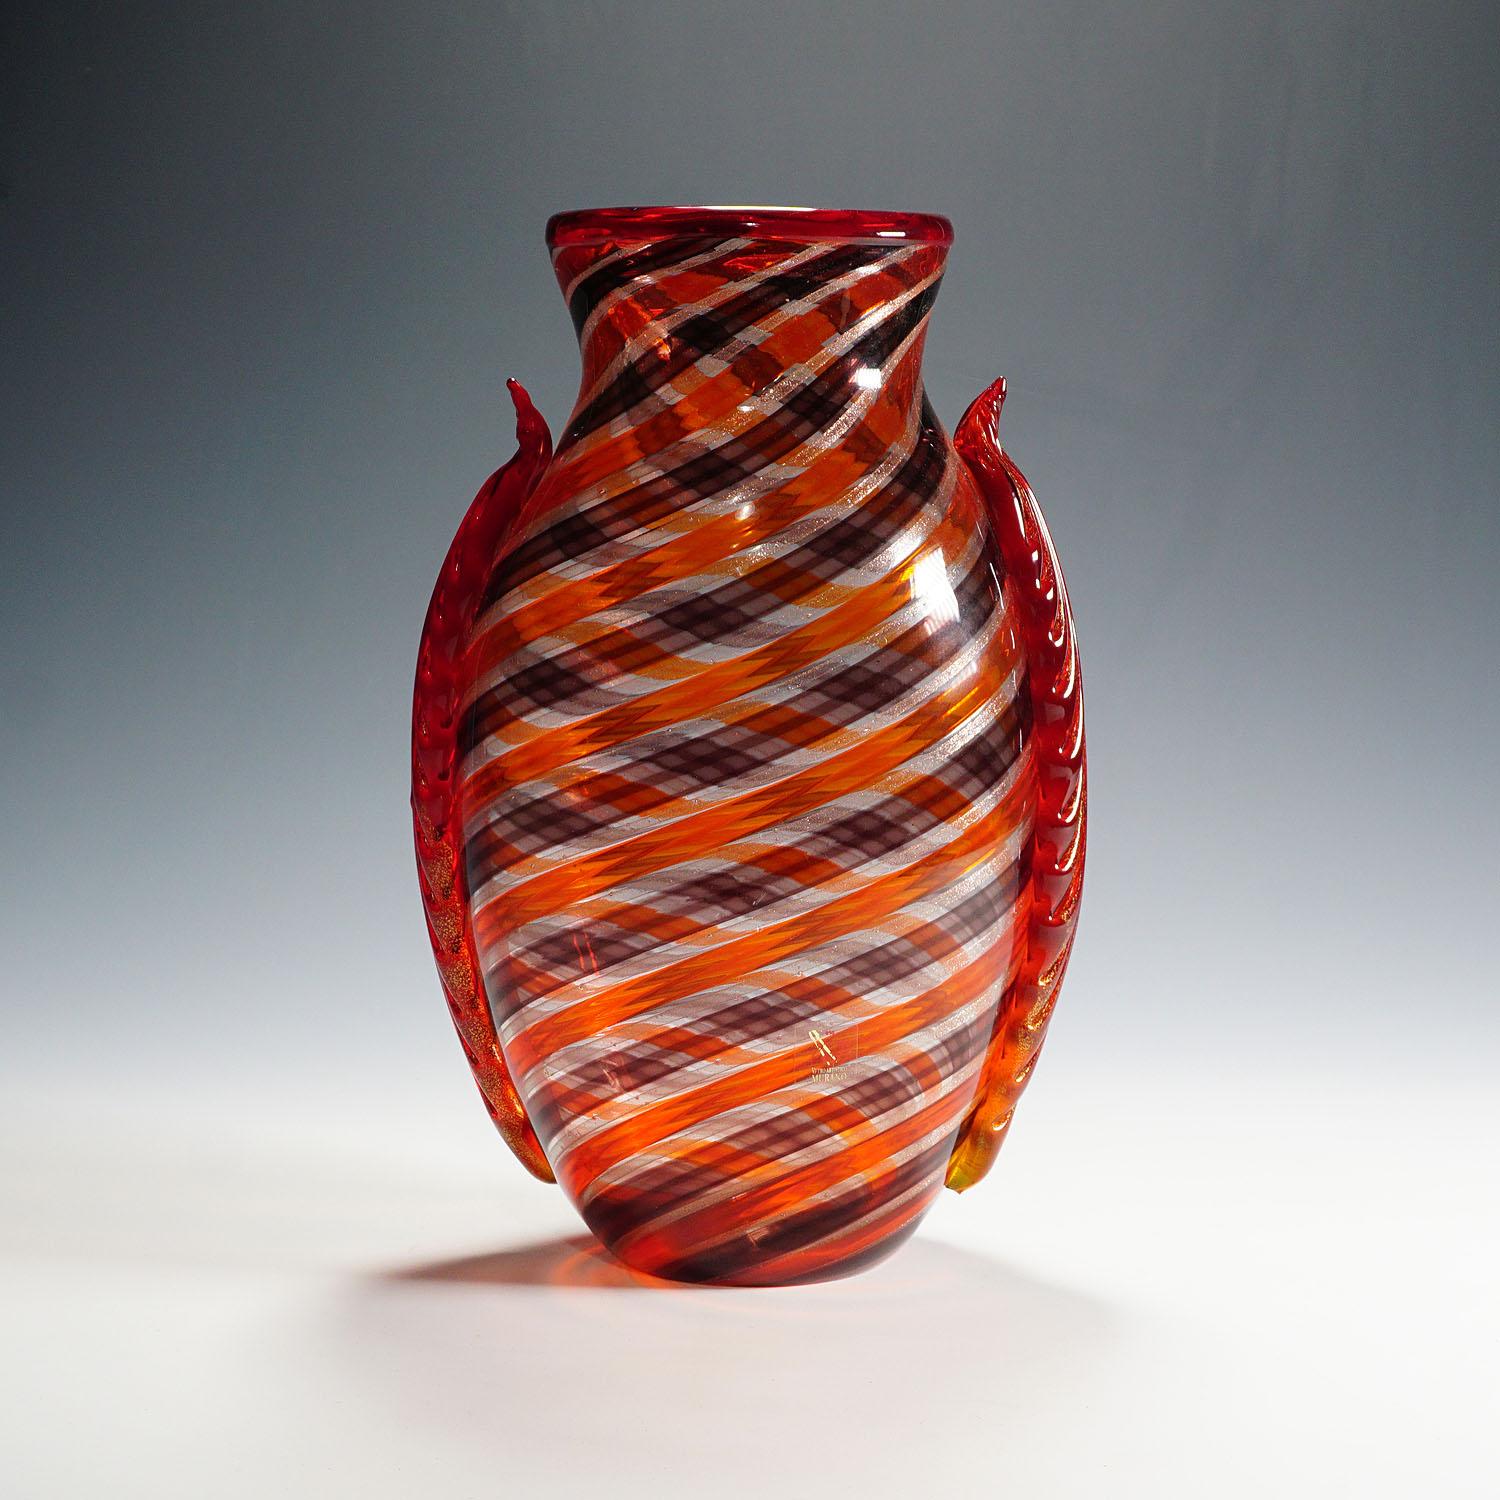 Un grand vase en verre d'art de Murano, conçu et réalisé par Eugenio Ferro & C.I.C. 1929 srl en 2009. Verre épais transparent avec motif en spirale en orange, aubergine et aventurine. Deux applications latérales en verre orange avec quelques